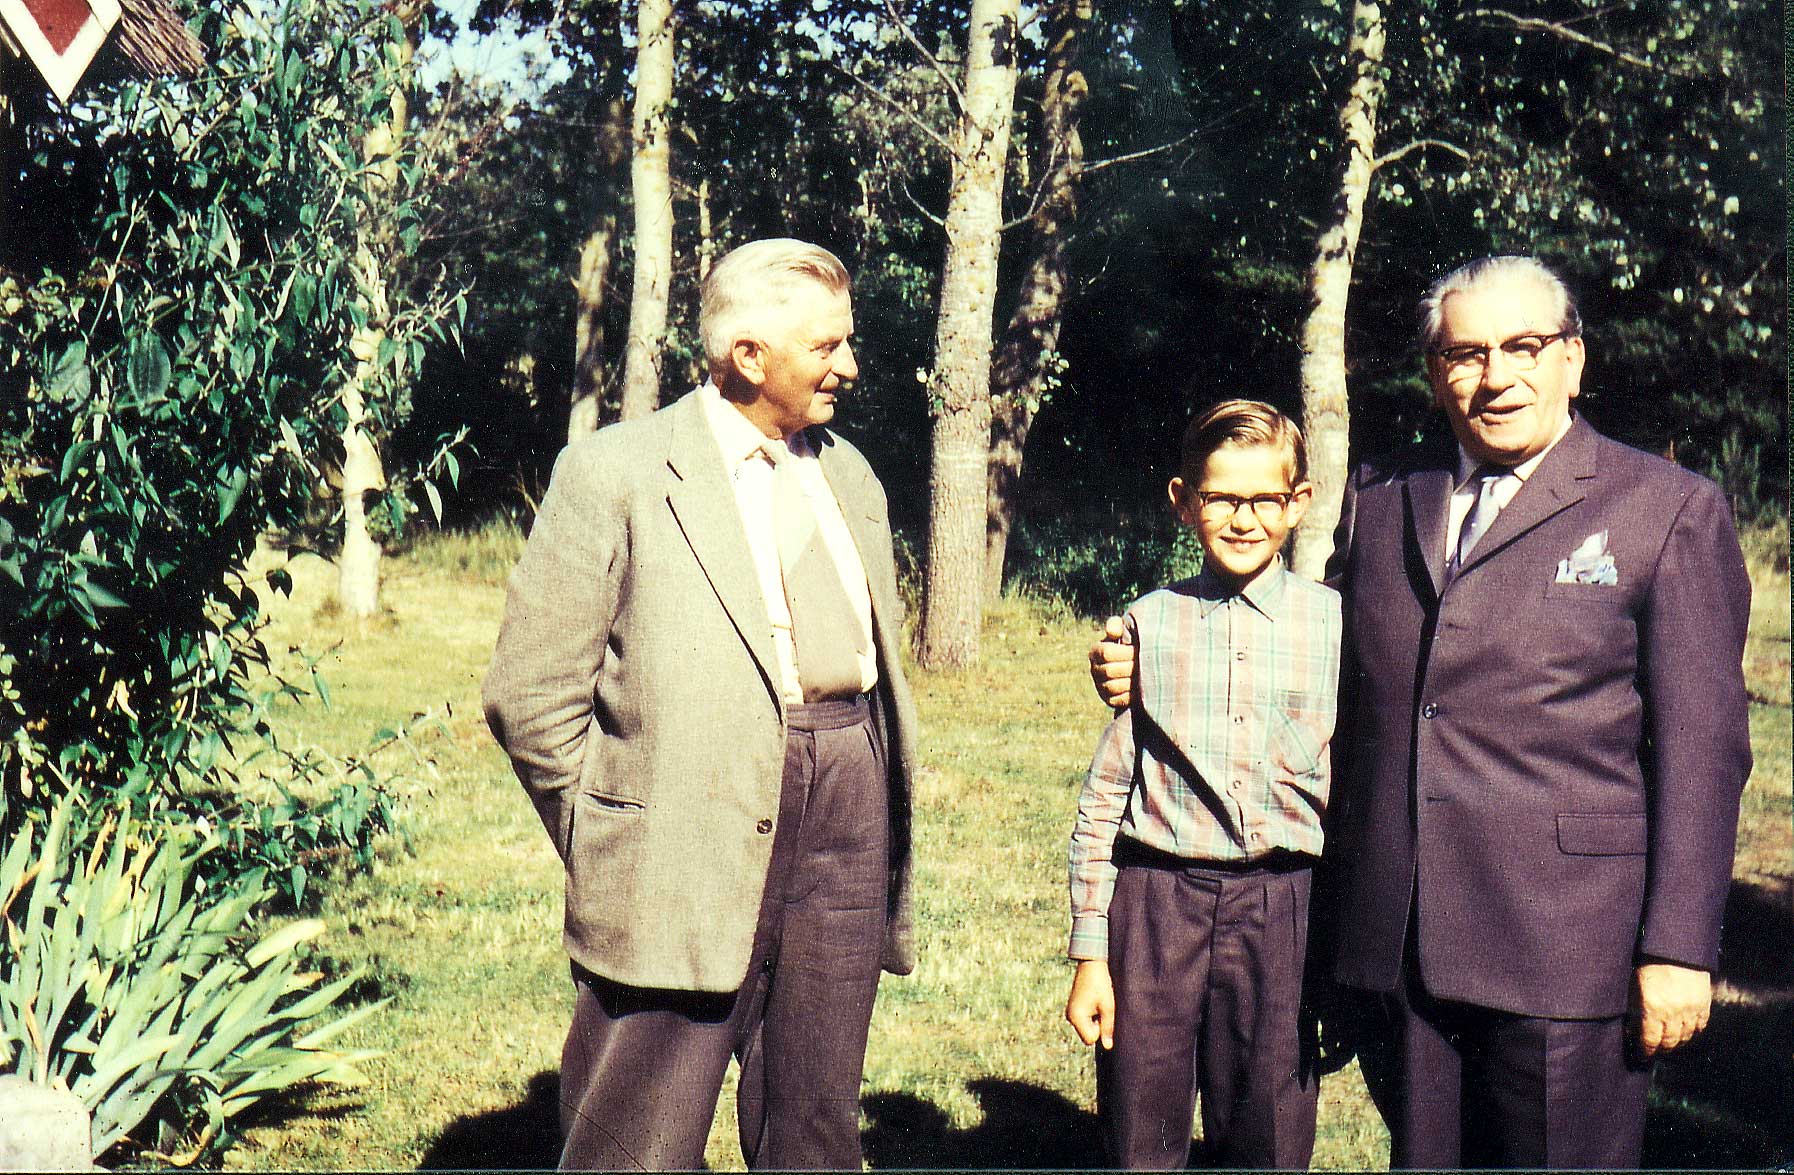 Ole 11 år og Martinus ved et Gardenparty ved Villa Rosenberg den 15. juli 1959, Martinus Center, Klintvej 69, Klint, 4500 Nykøbing Sj. At have tillid til livet